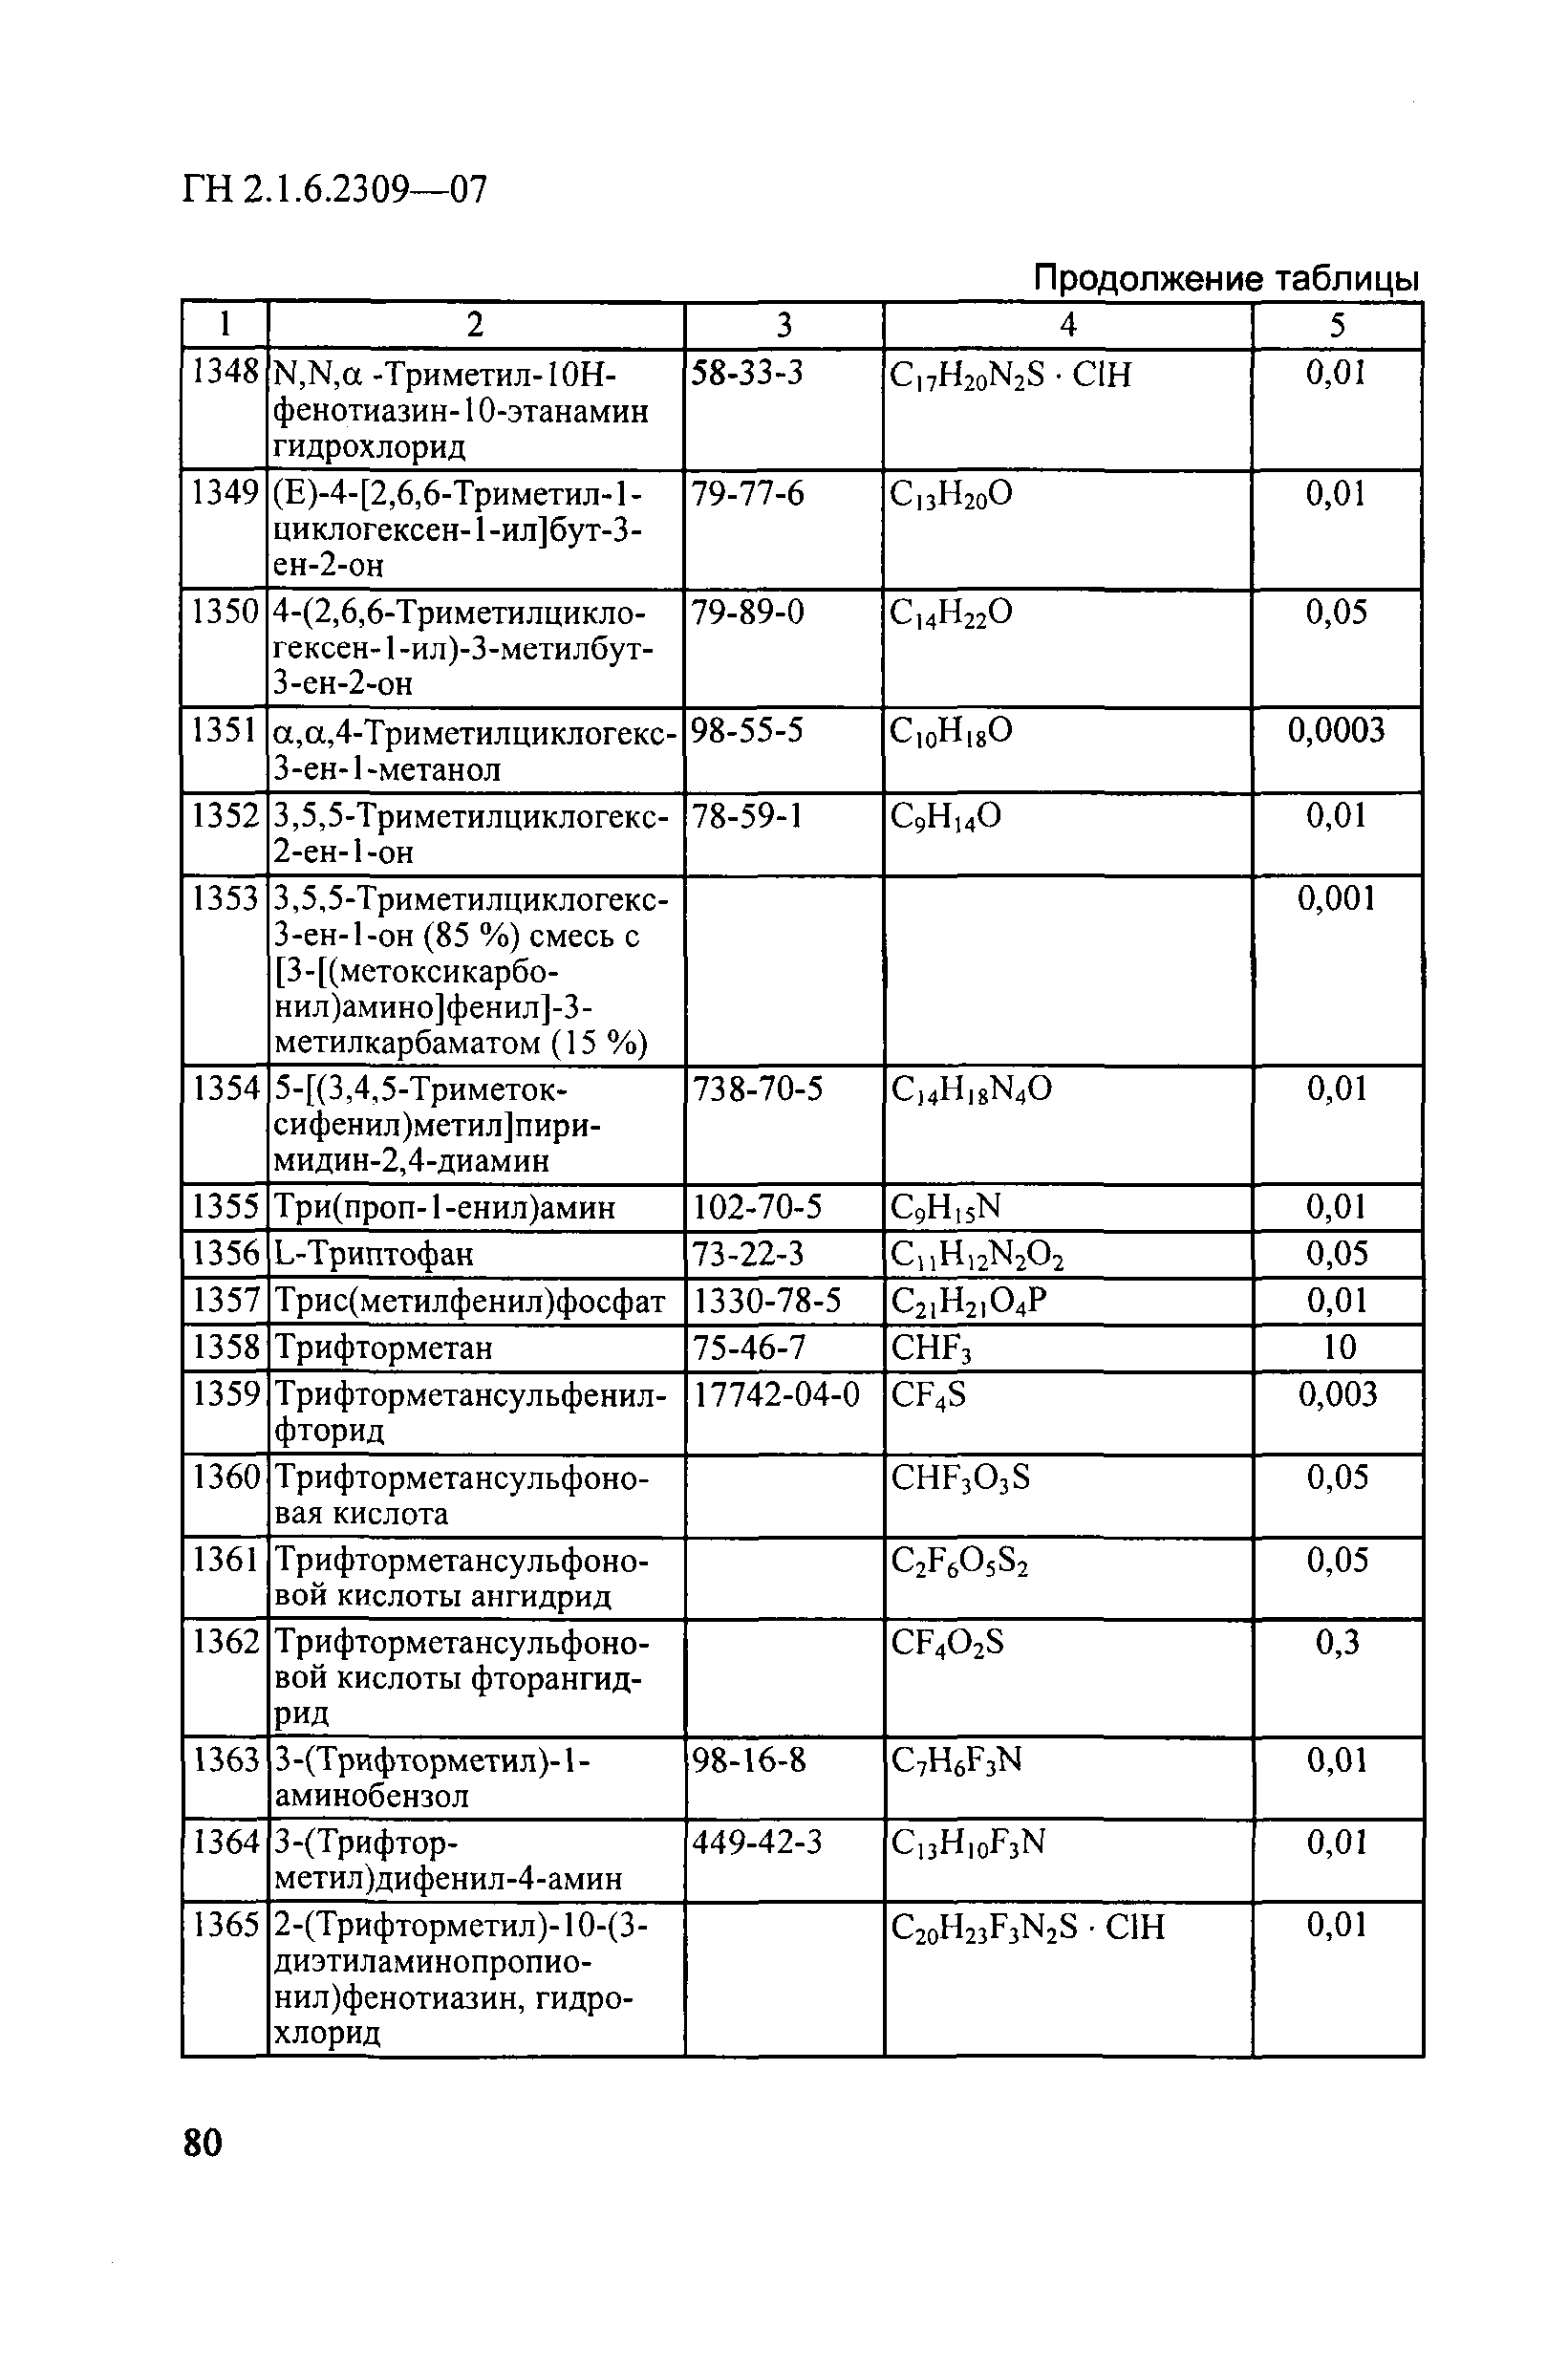 ГН 2.1.6.2309-07